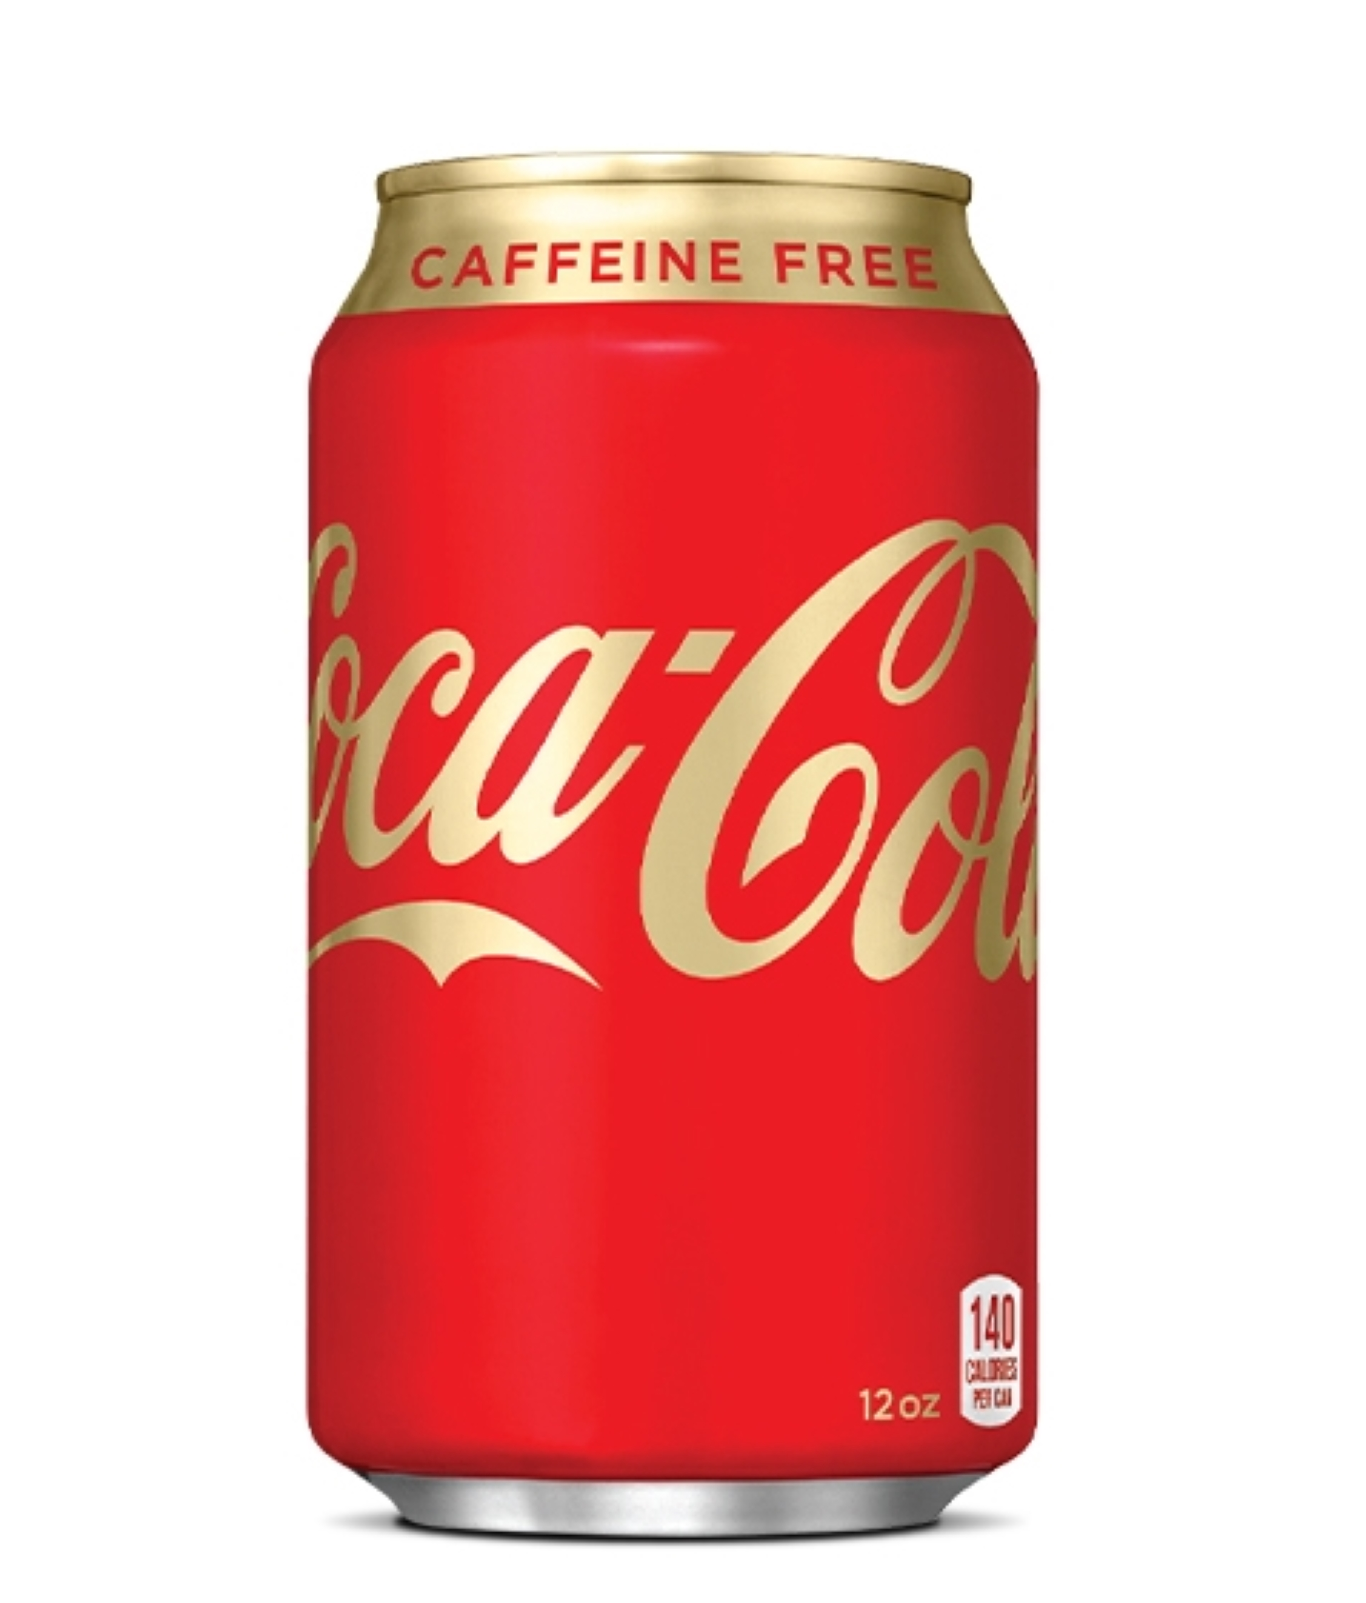 https://us.coca-cola.com/content/dam/nagbrands/us/coke/en/products/coca-cola-original/desktop/caffeine-free-coca-cola-12-ounce-can.png?wid=325